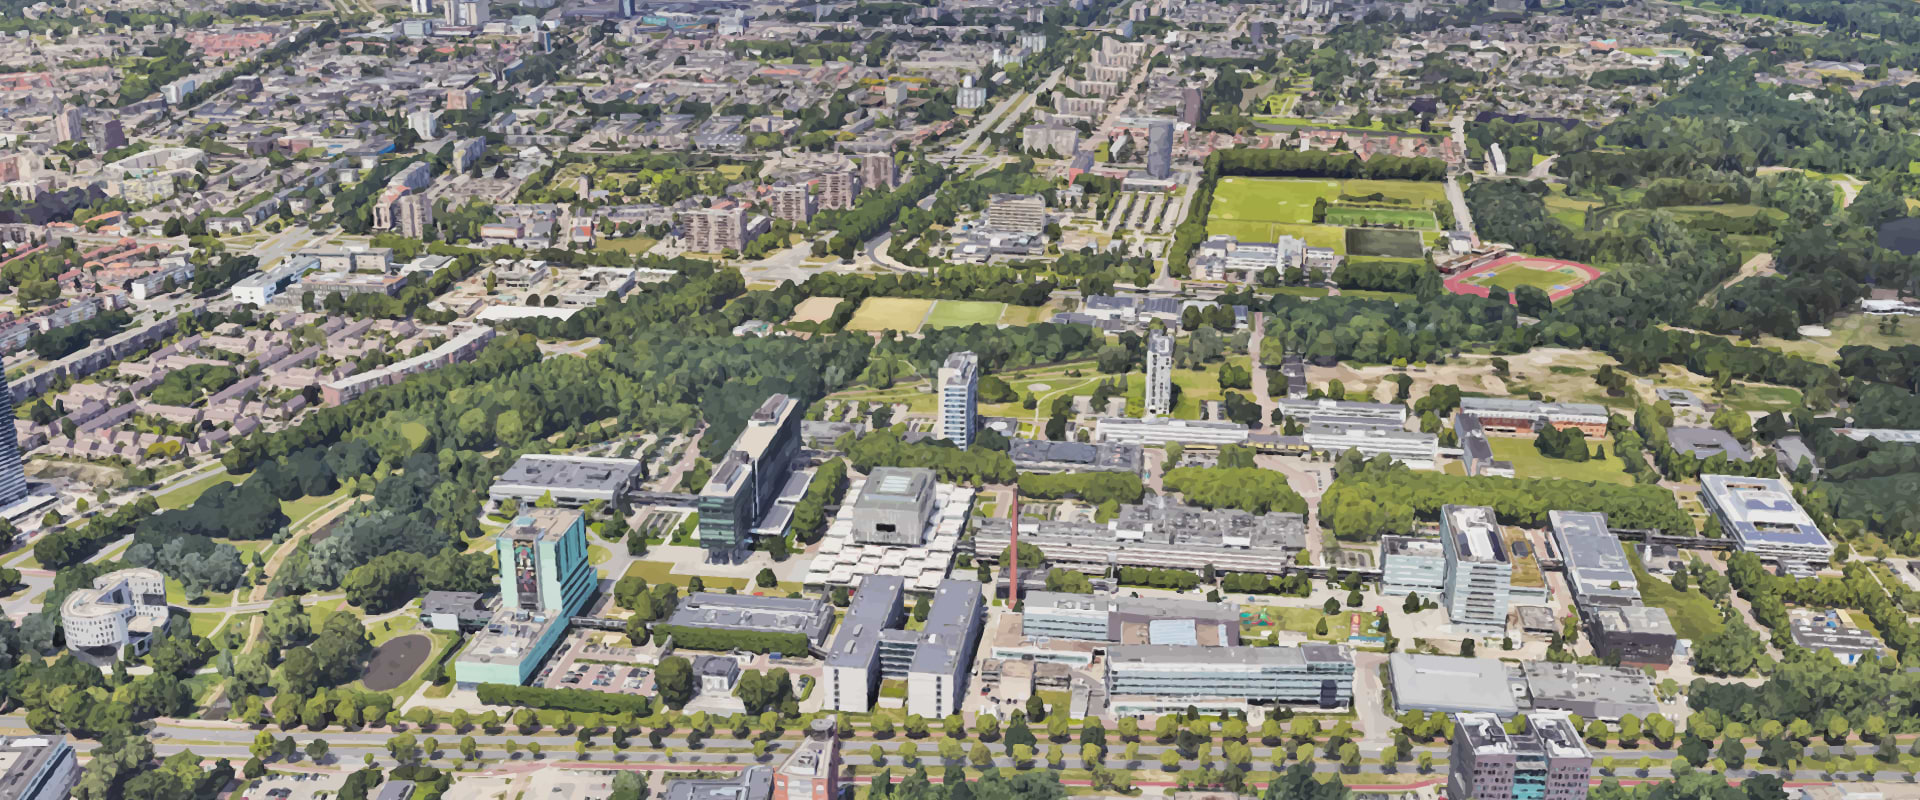 De campus van de Technische Universiteit Eindhoven (TU/e Campus) is gelegen nabij het stadscentrum. Op de campus zijn, naast onderwijsgebouwen, ook bedrijven gehuisvest. Deze bedrijven hebben allemaal baat bij de samenwerking met en aanwezigheid van de kennisinstellingen op TU/e Campus. De bedrijven variëren van startups tot grote internationale onderzoeksinstituten. De TU/e Campus faciliteert het gedeeld gebruik van state-of-the-art laboratoriumfaciliteiten en ondersteuning voor nieuwe bedrijven.